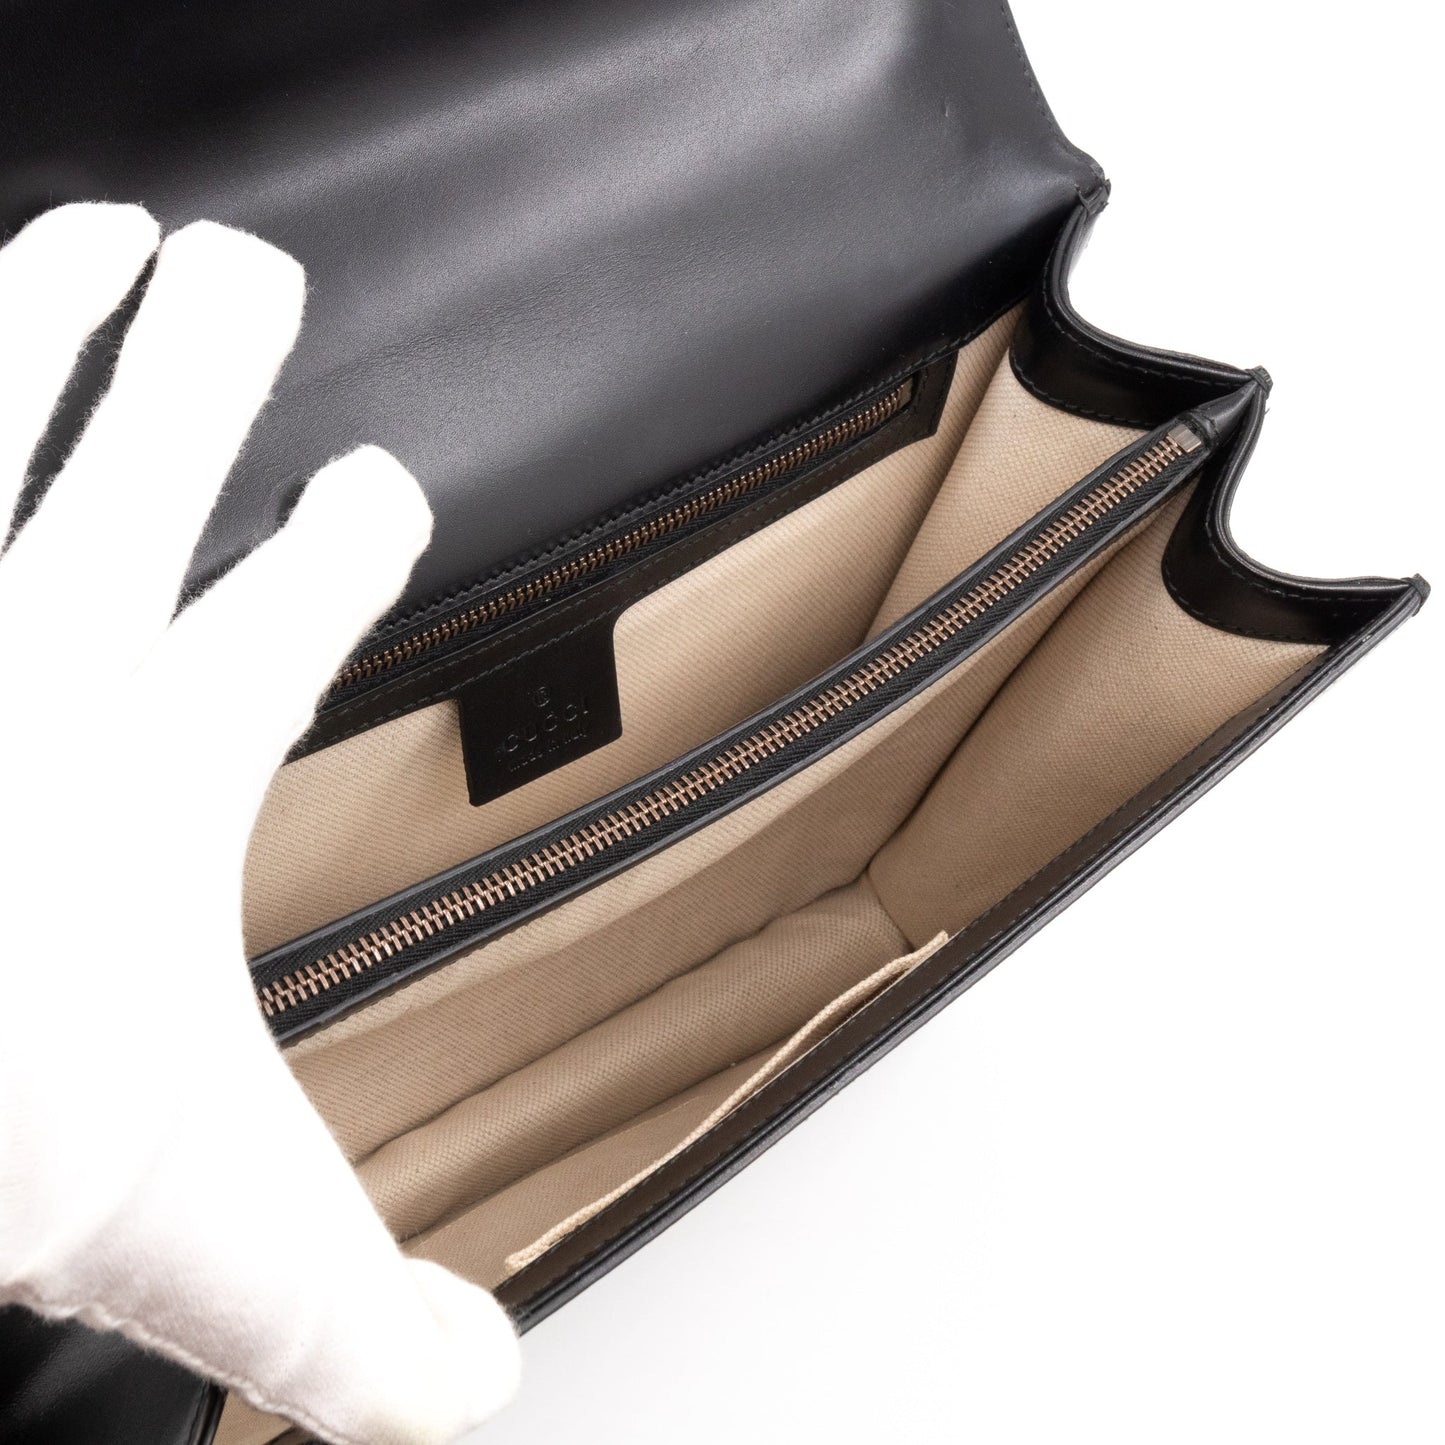 GG Marmont Heart Large Shoulder Bag Black Leather